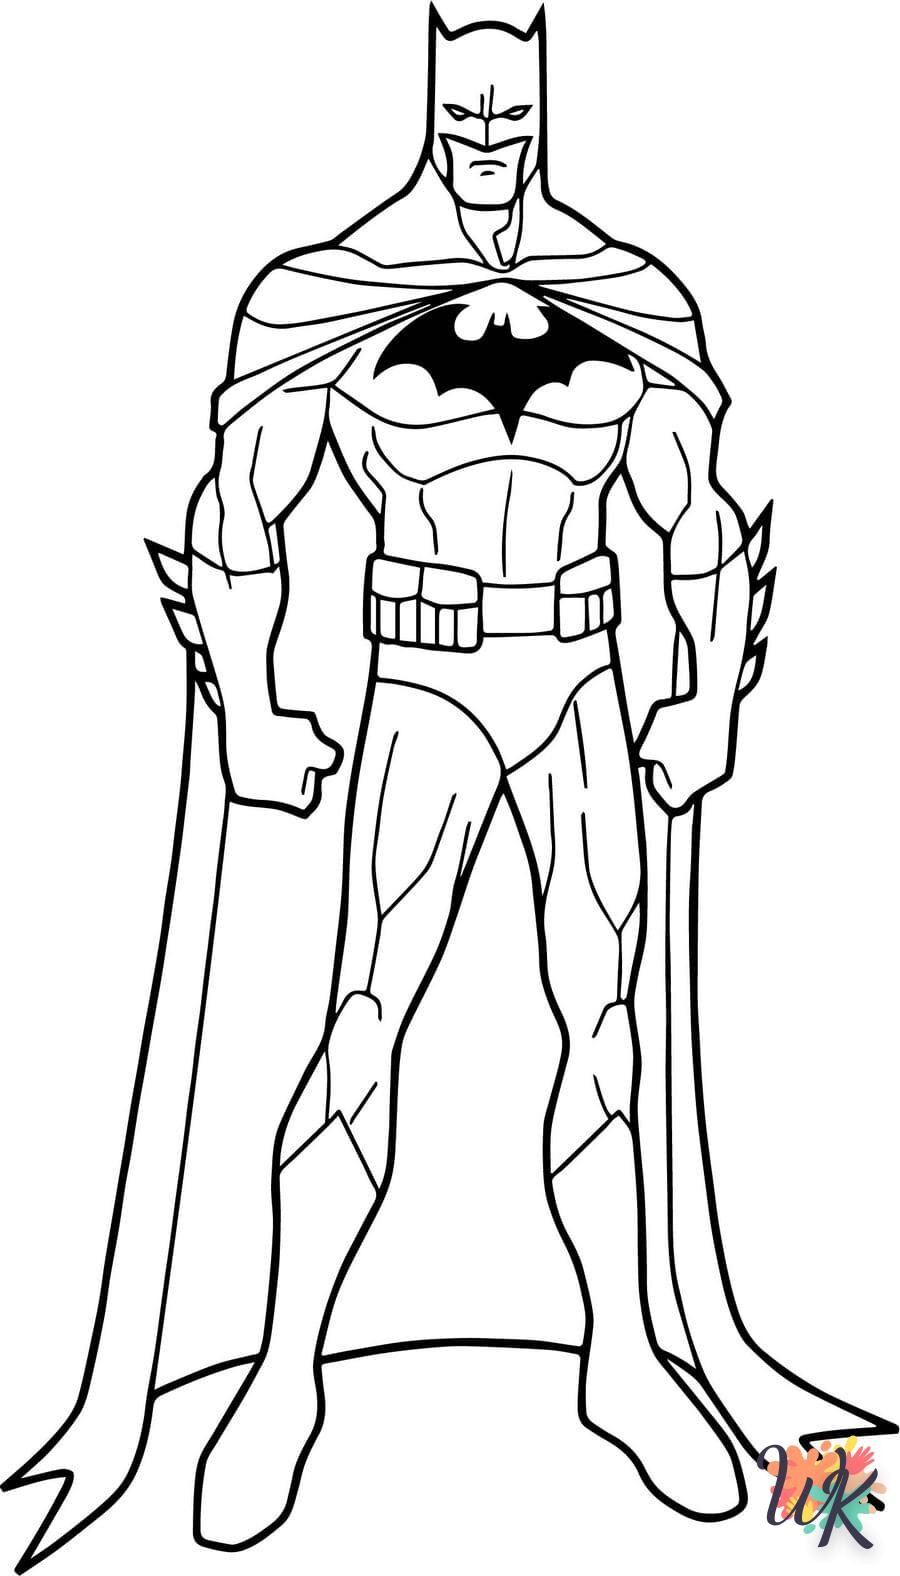 Compartir M S De Dibujos Para Colorear Batman Muy Caliente